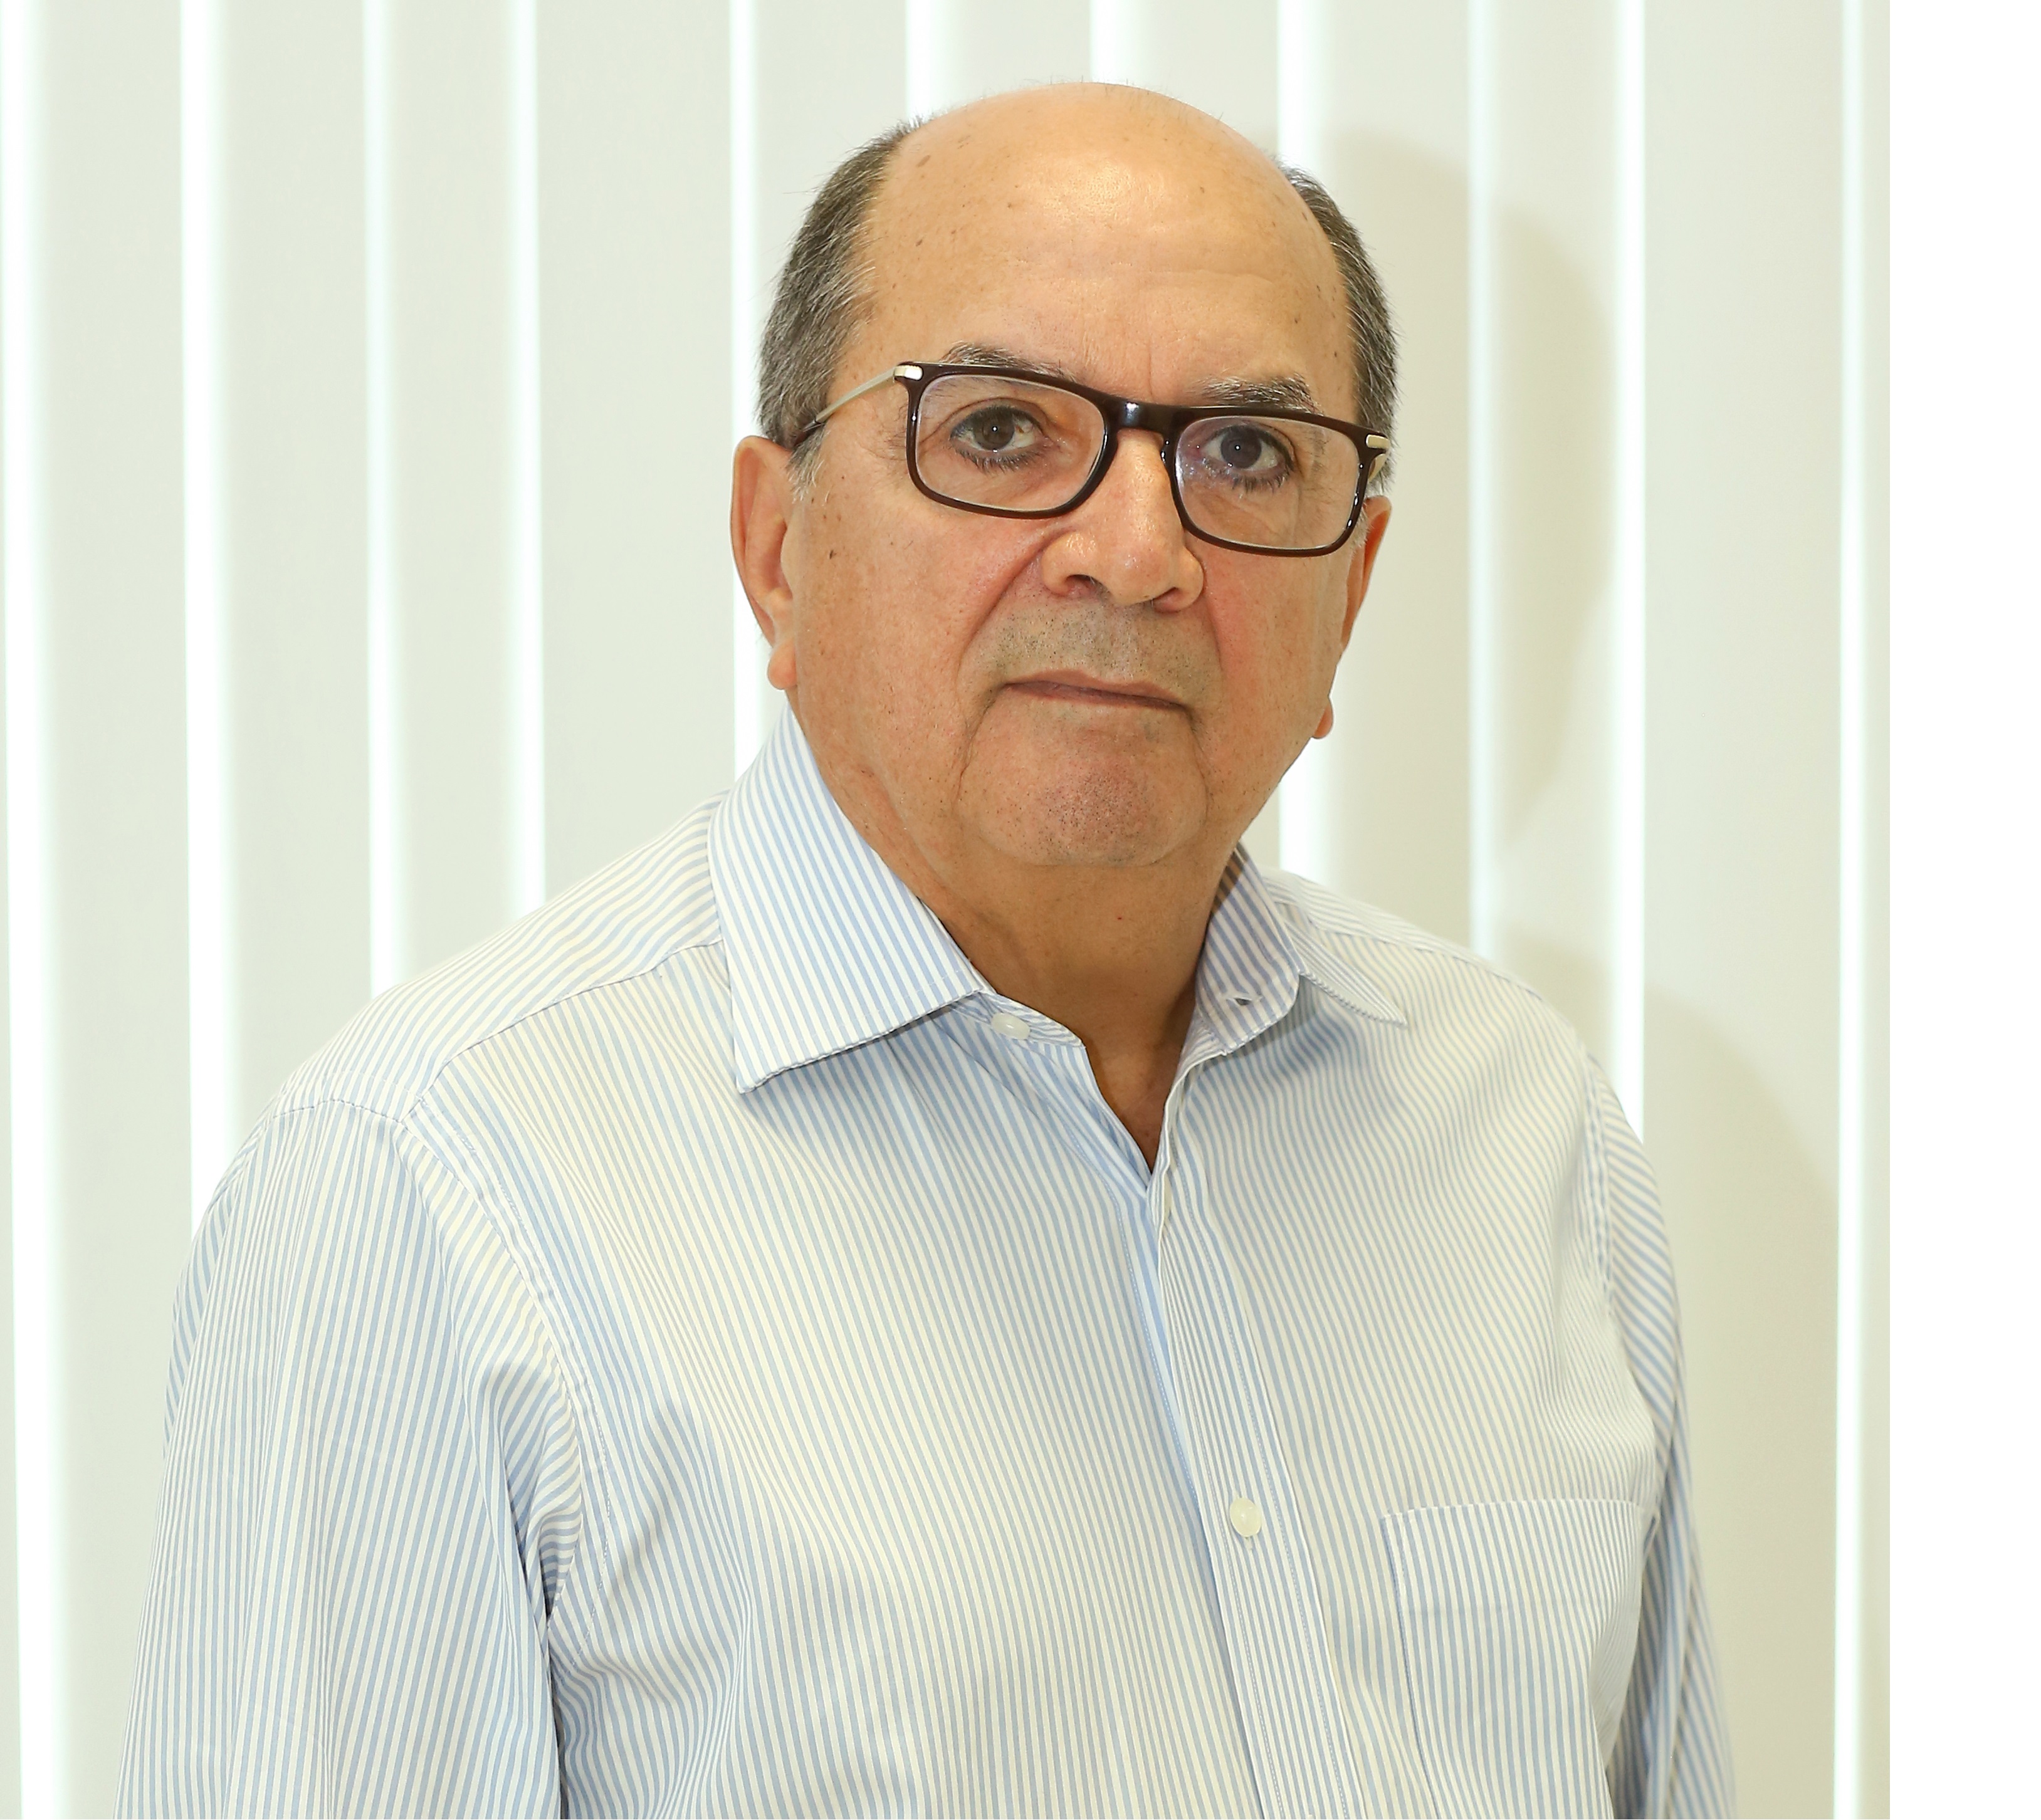 José Augusto Vieira